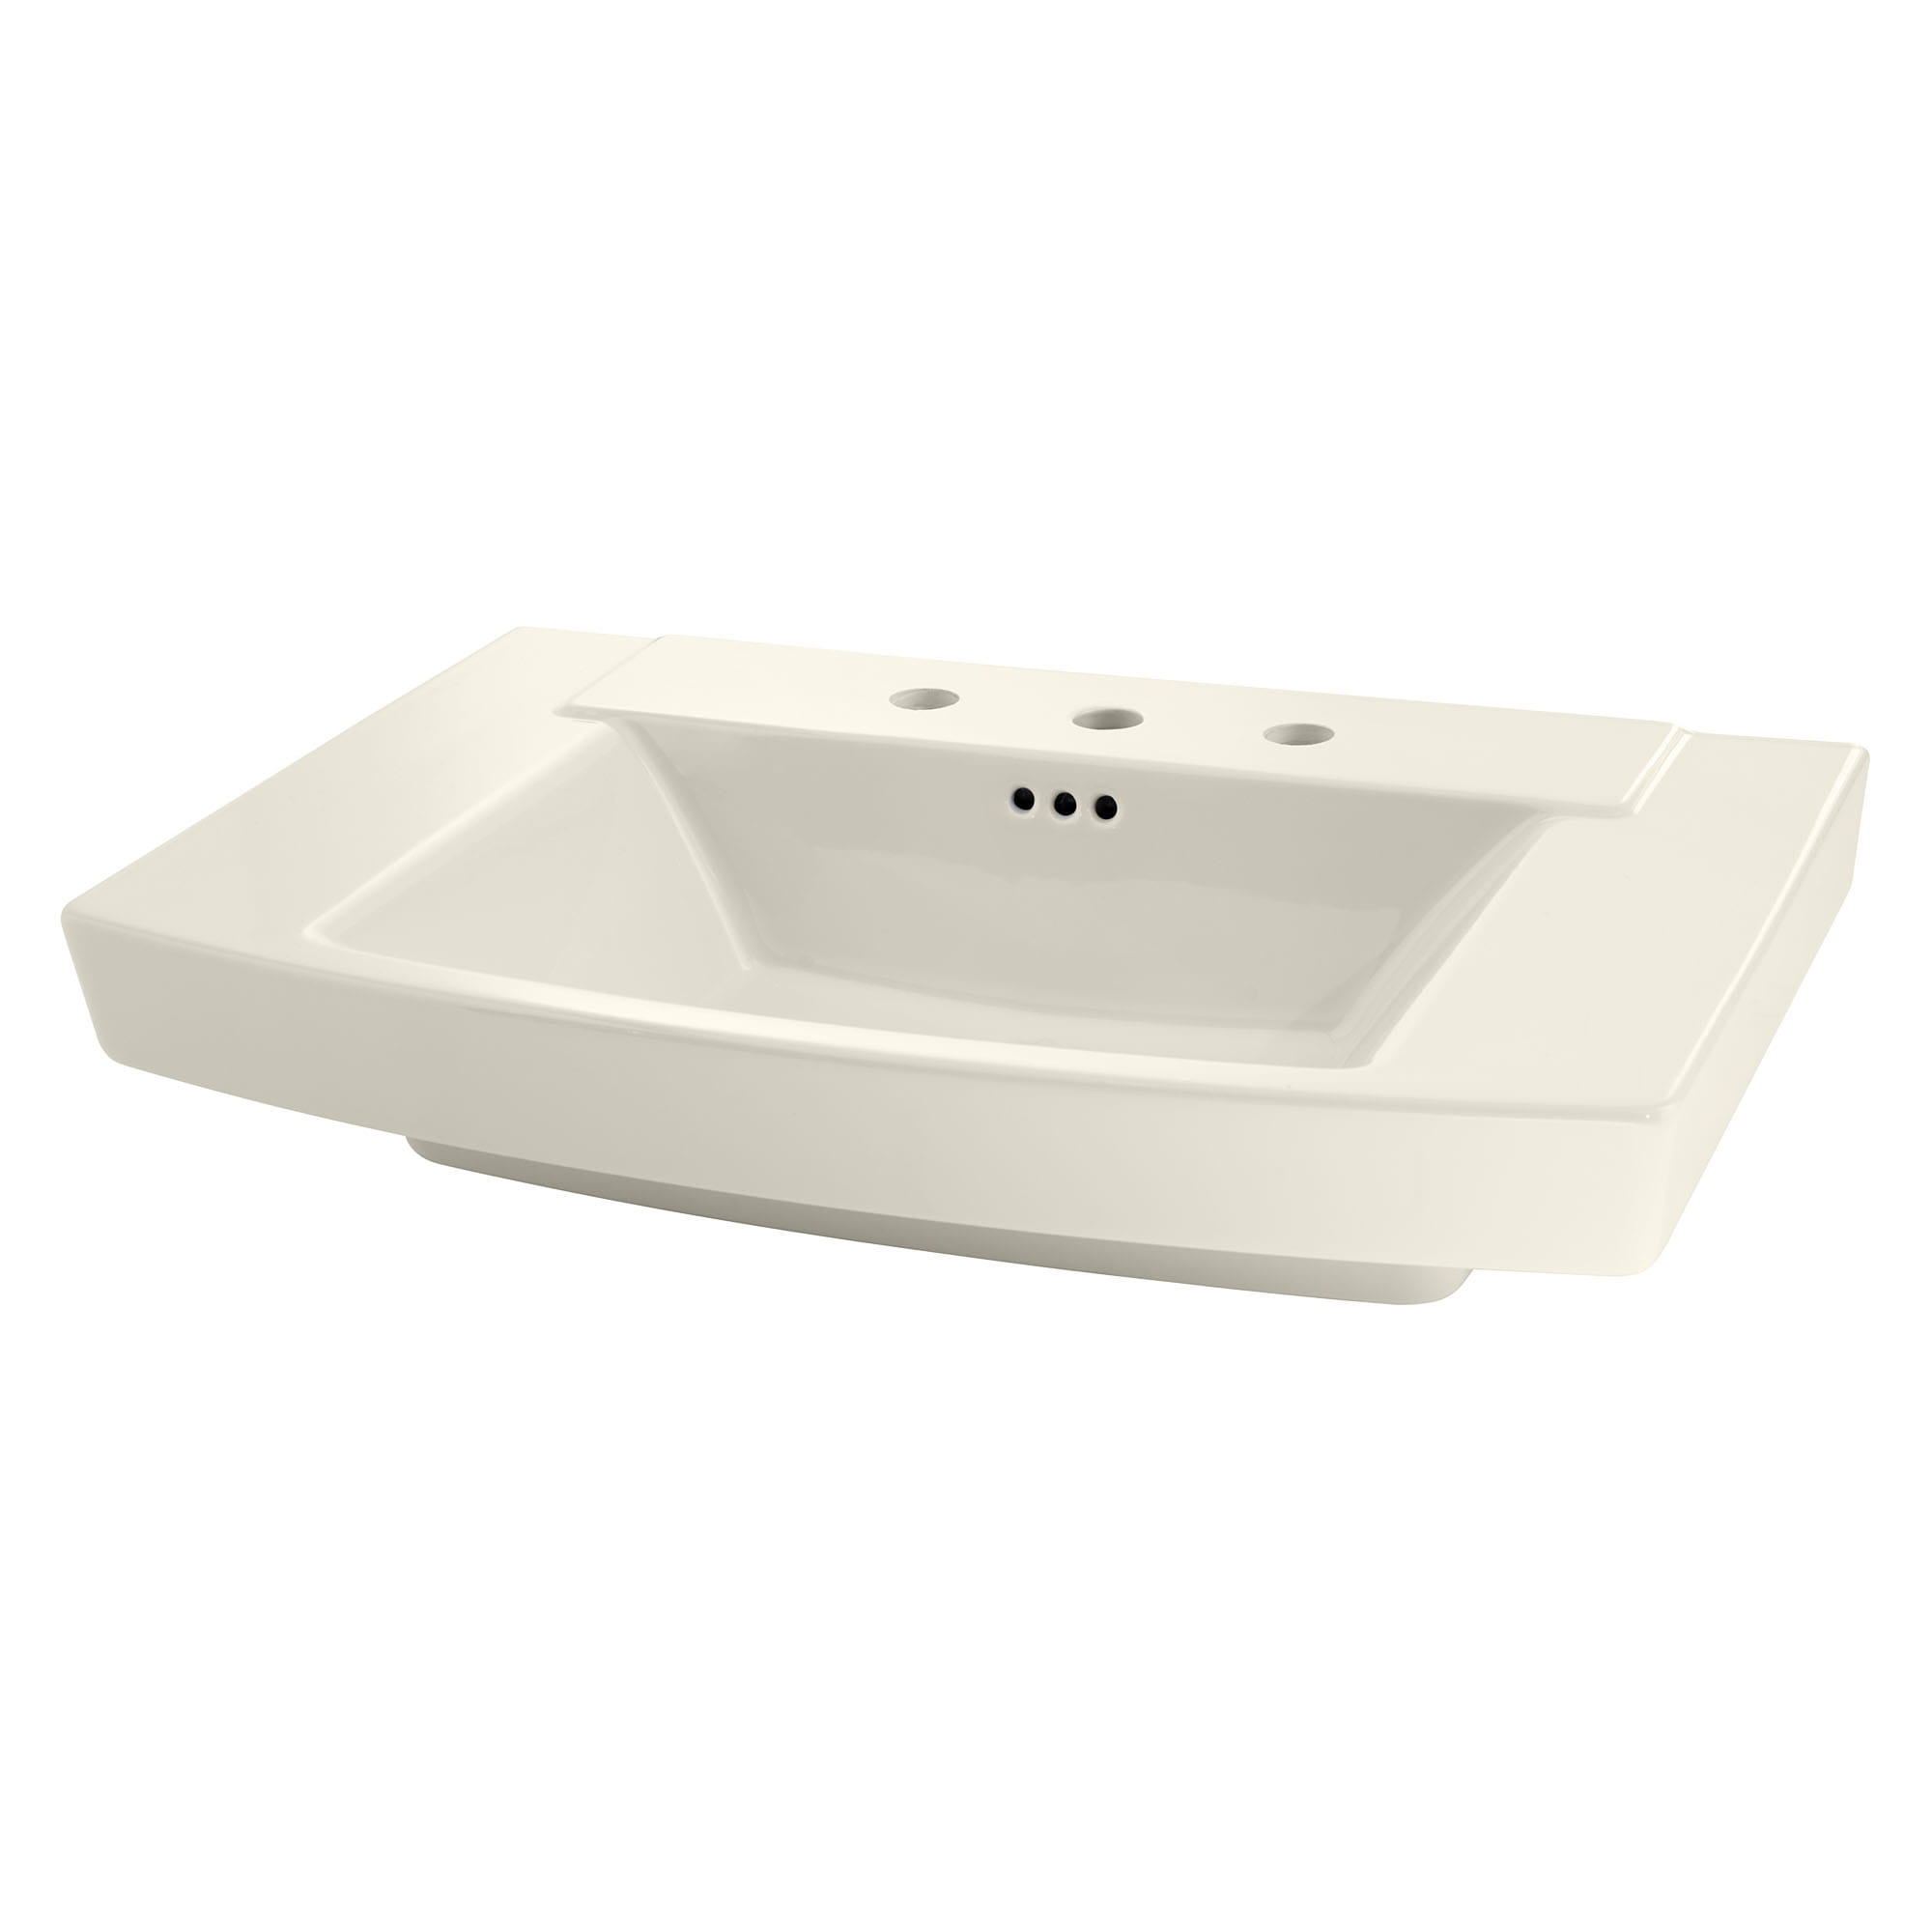 Townsend® 8-Inch Widespread Pedestal Sink Top